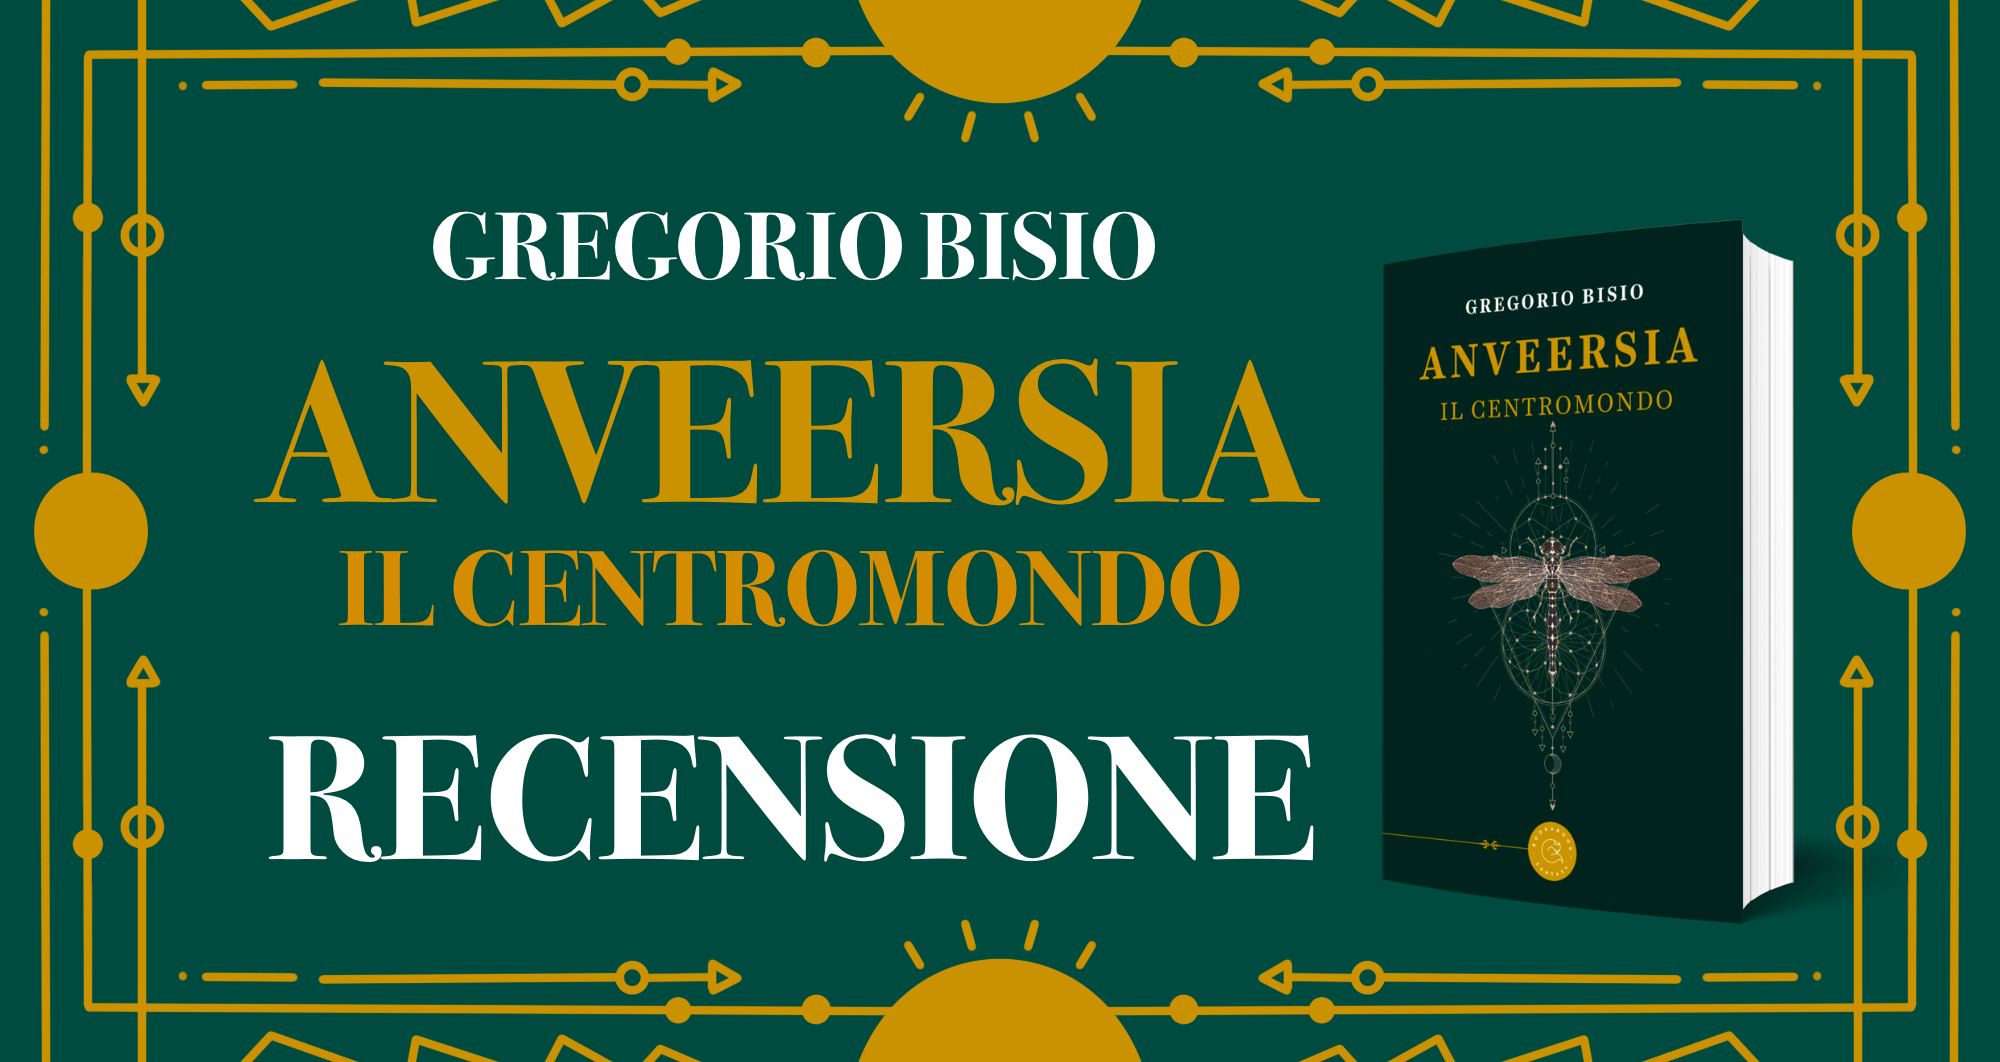 Anveersia: Il Centromondo, Gregorio Bisio – Recensione